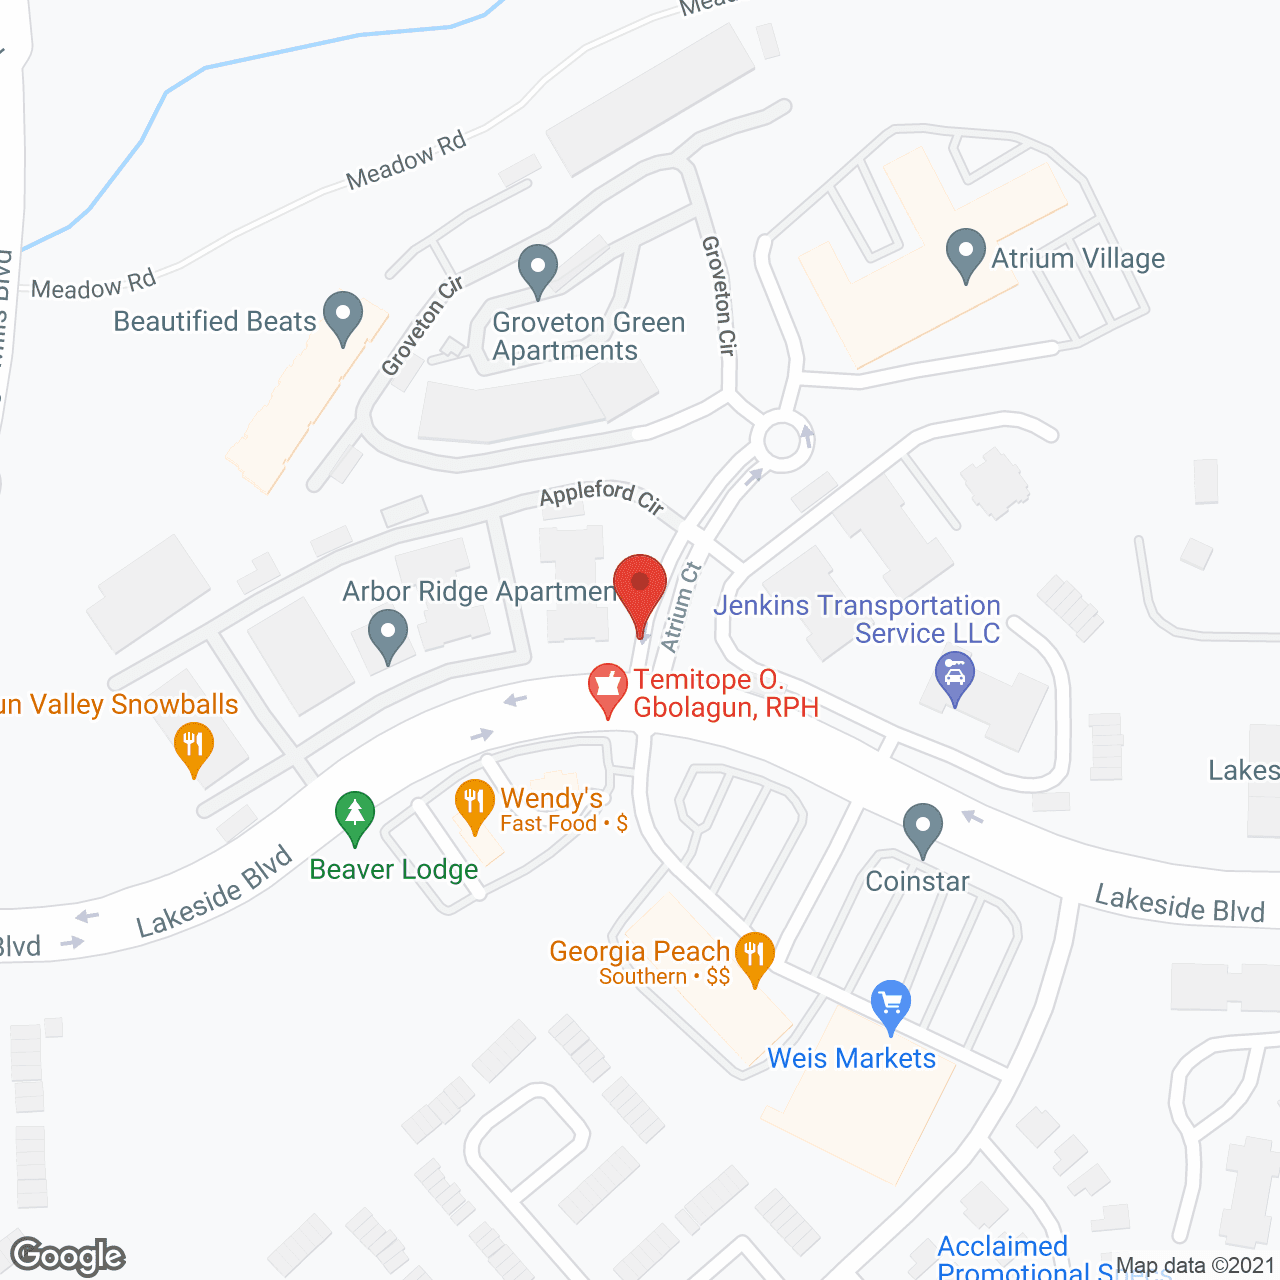 Atrium Village in google map